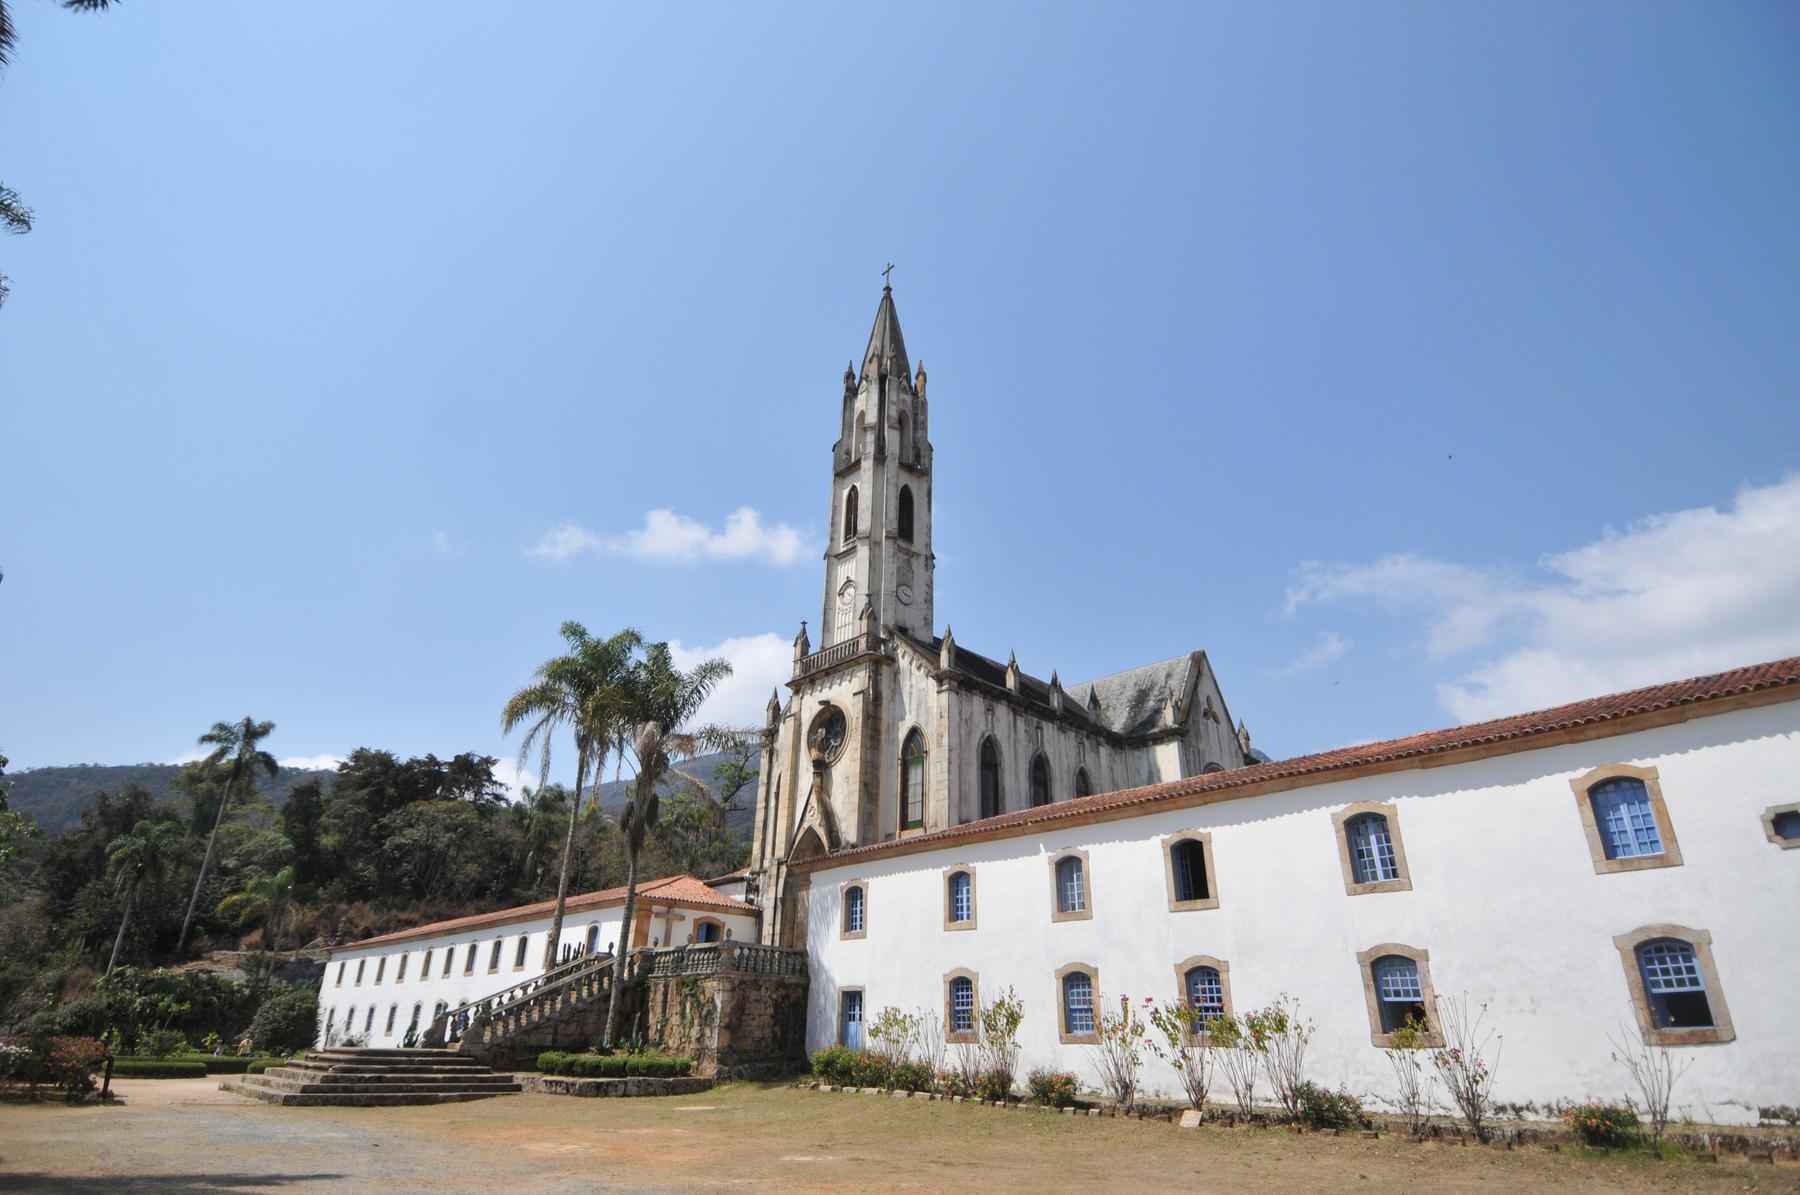  Depois de ficar ilhado, Santuário do Caraça reabre para visitação - Foto: Gladyston Rodrigues/EM/D.A Press